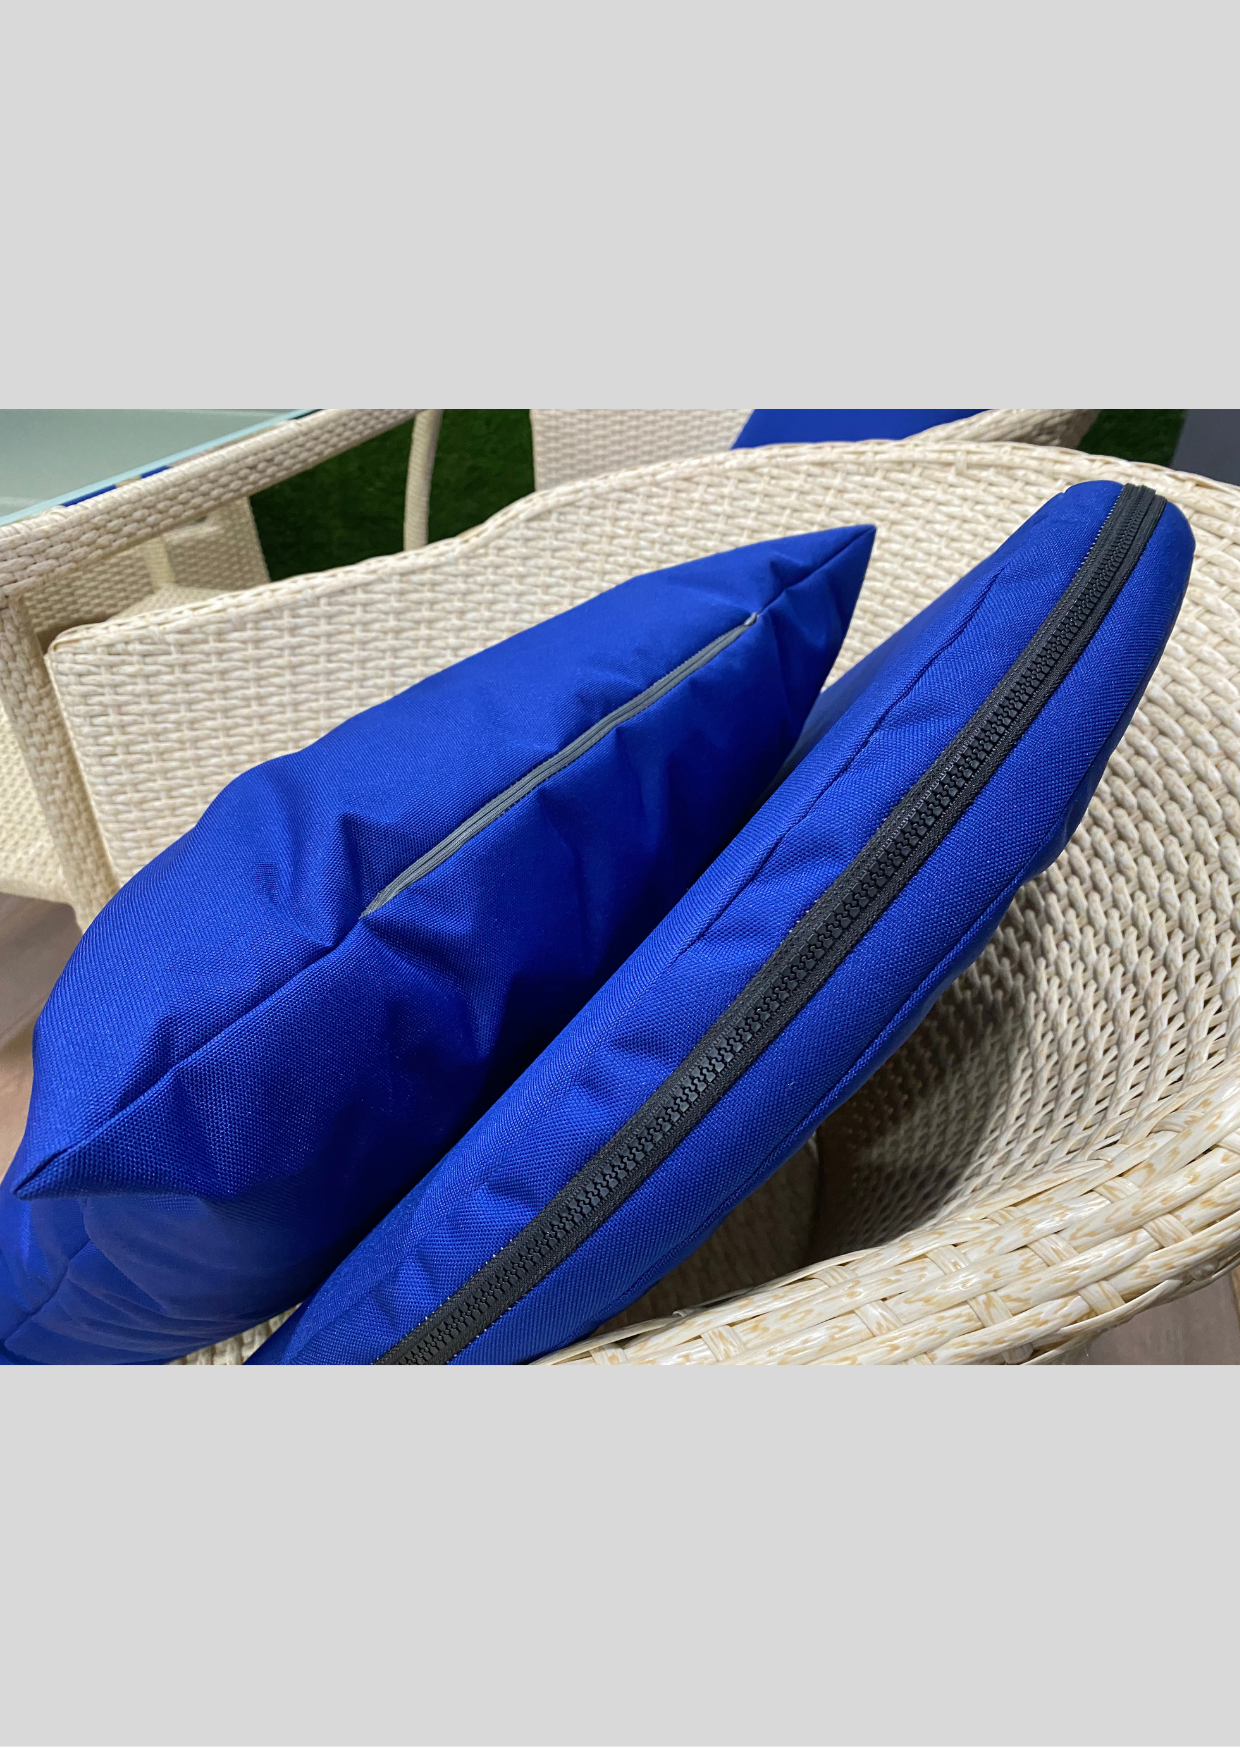 Синие подушки из влагостойкой ткани для плетеной мебели